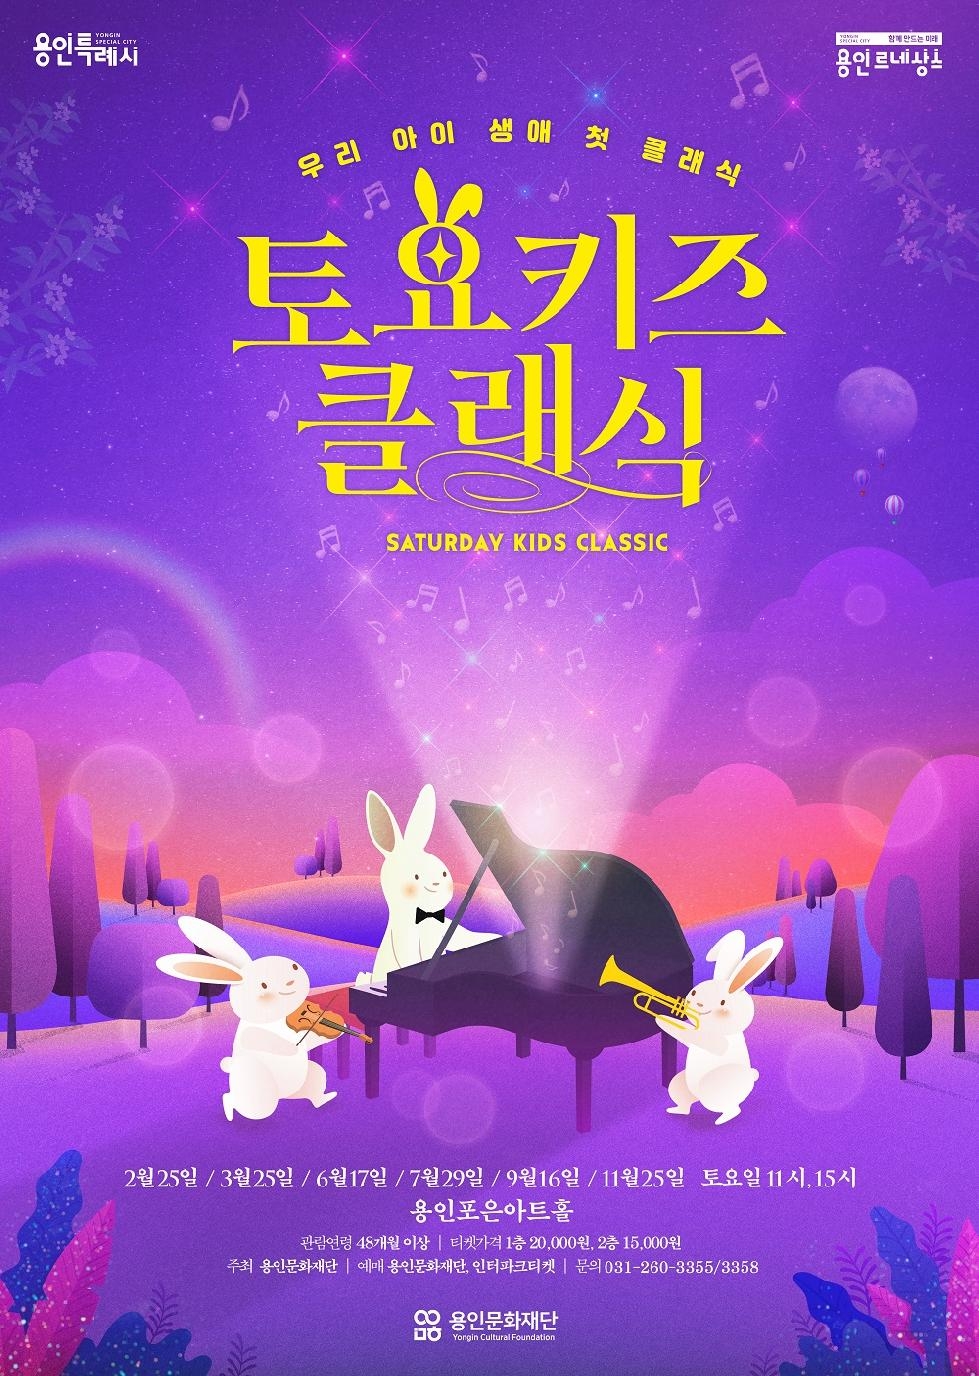 용인문화재단, 명작 애니메이션 OST로 구성한 클래식 공연 선보여